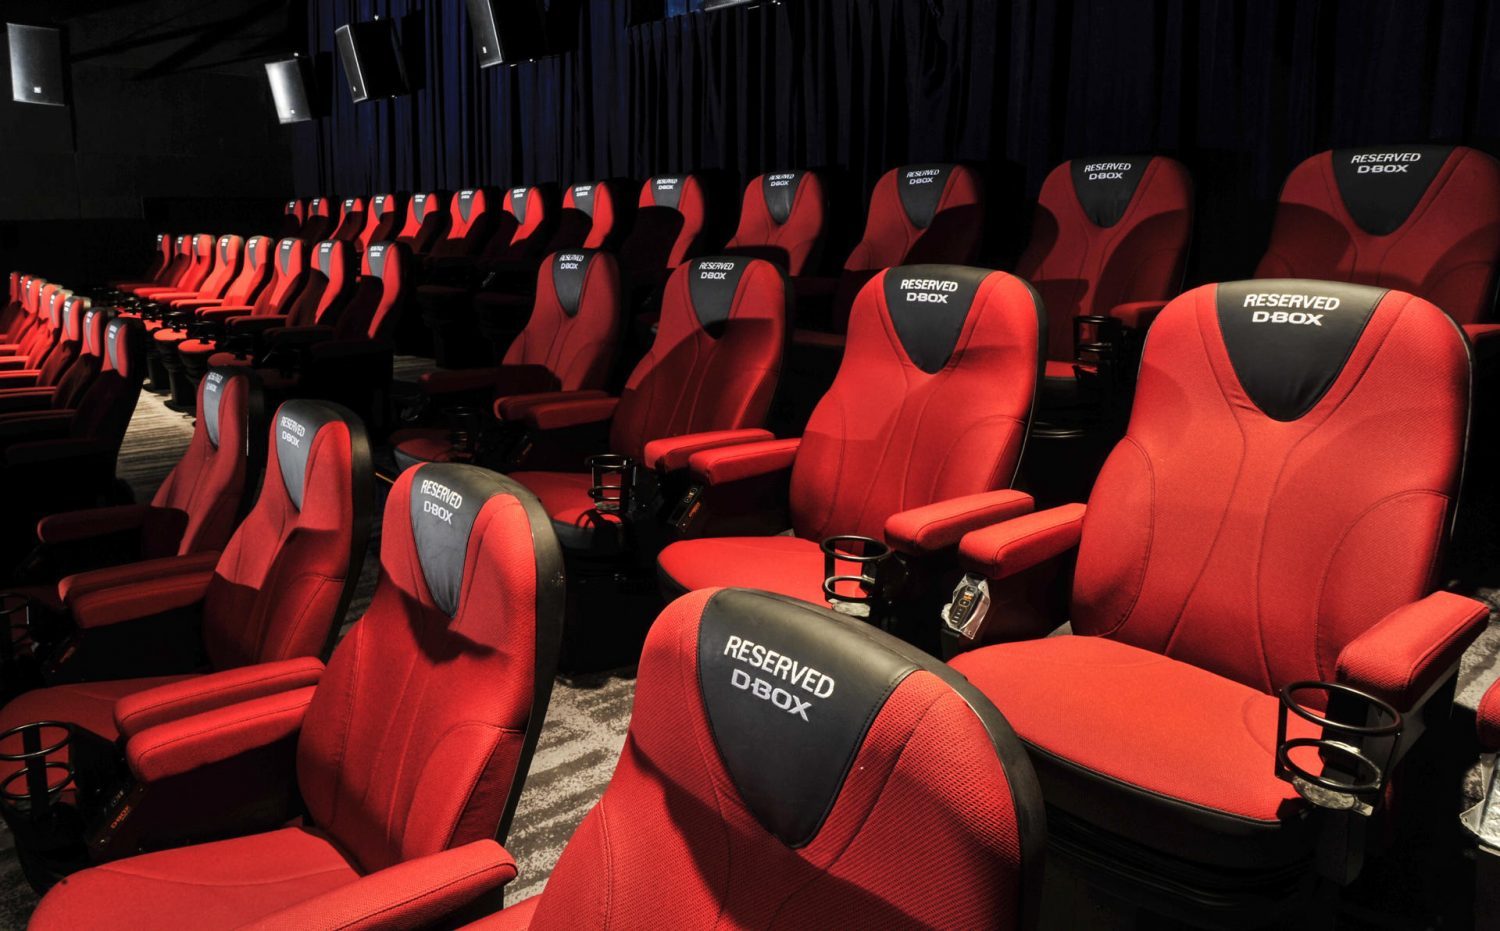 Les salles de cinéma déplorent la sélection de deux films Netflix à Cannes